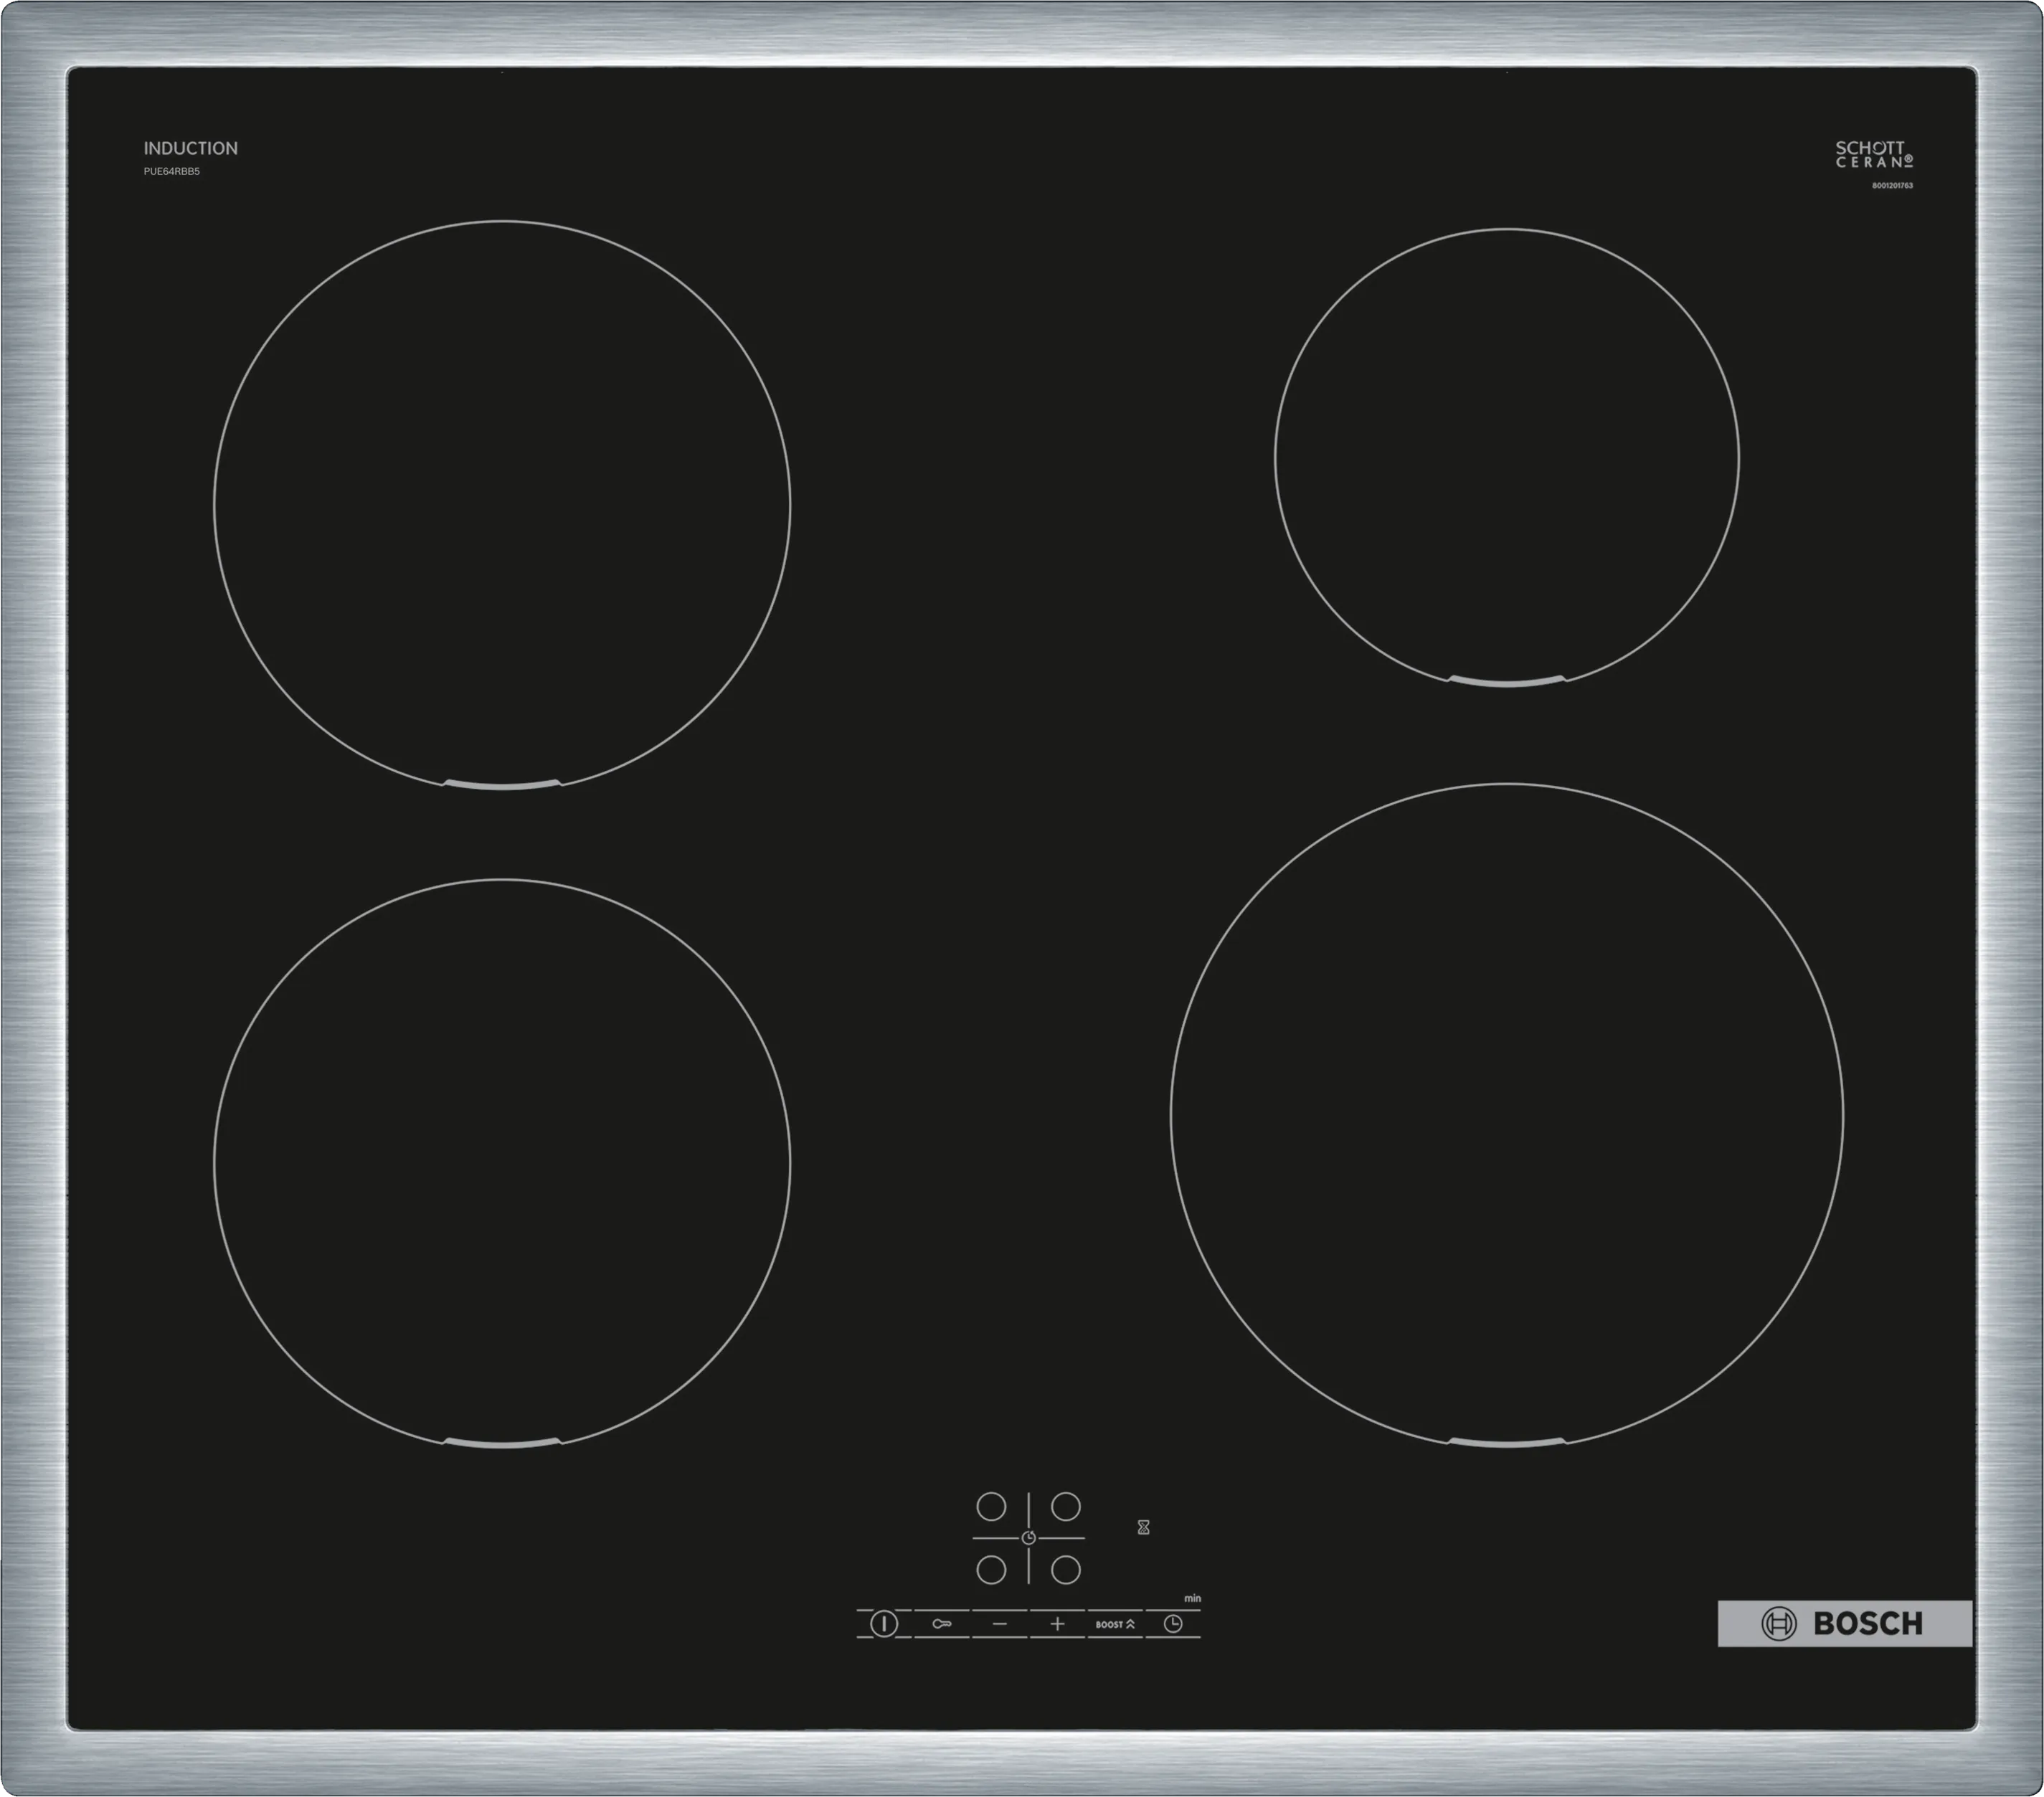 Indukciona ploča za kuvanje, PUE645BB5D, Serie 6